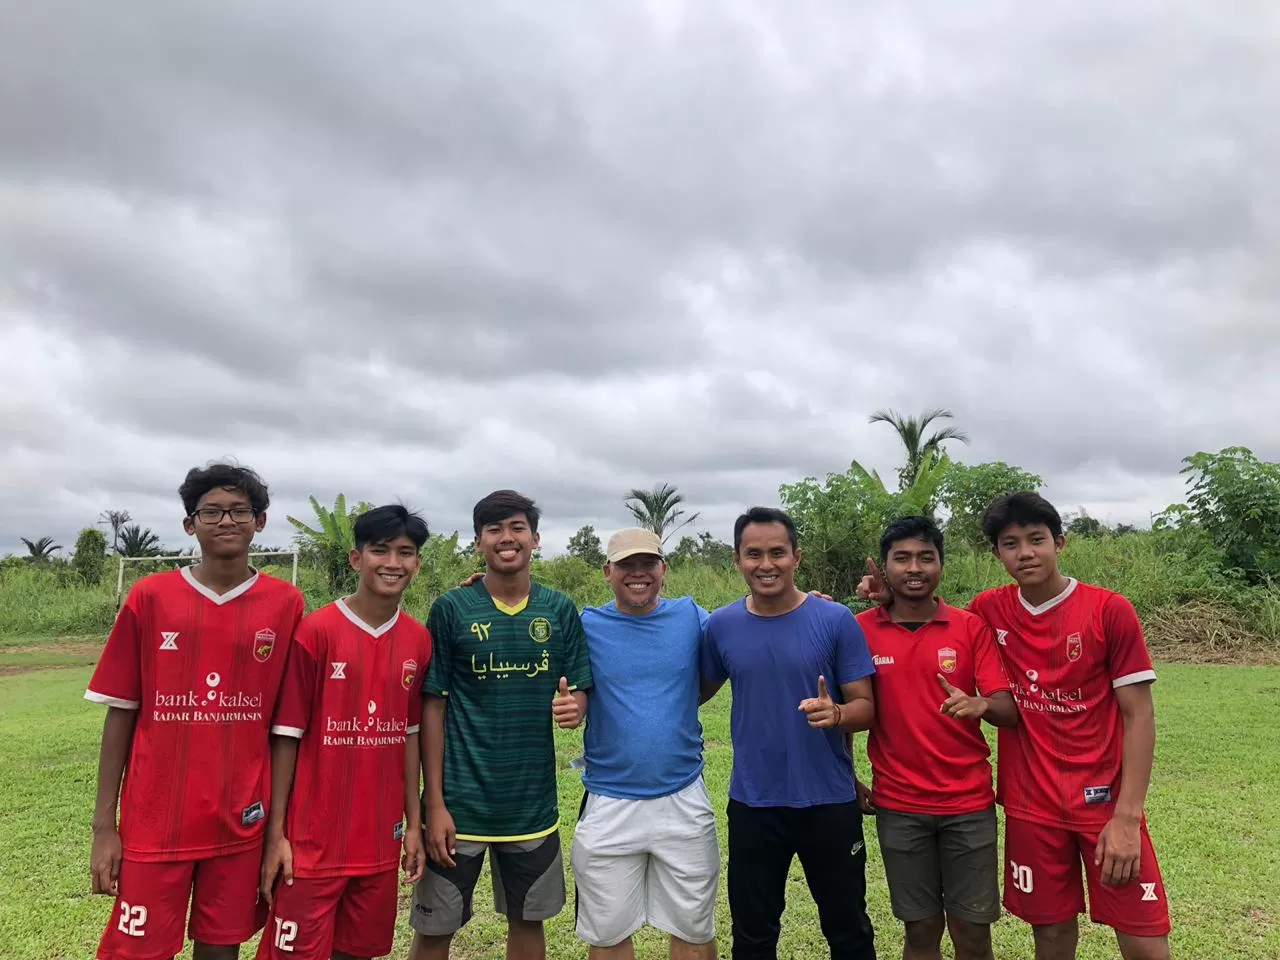 KUNJUNGAN: Pelatih usia muda ASIFA, Tommy Pranata (tiga dari kanan) bersama orang tua dan para pemain dari ASIFA saat mengunjungi latihan Peseban di Banjarmasin.